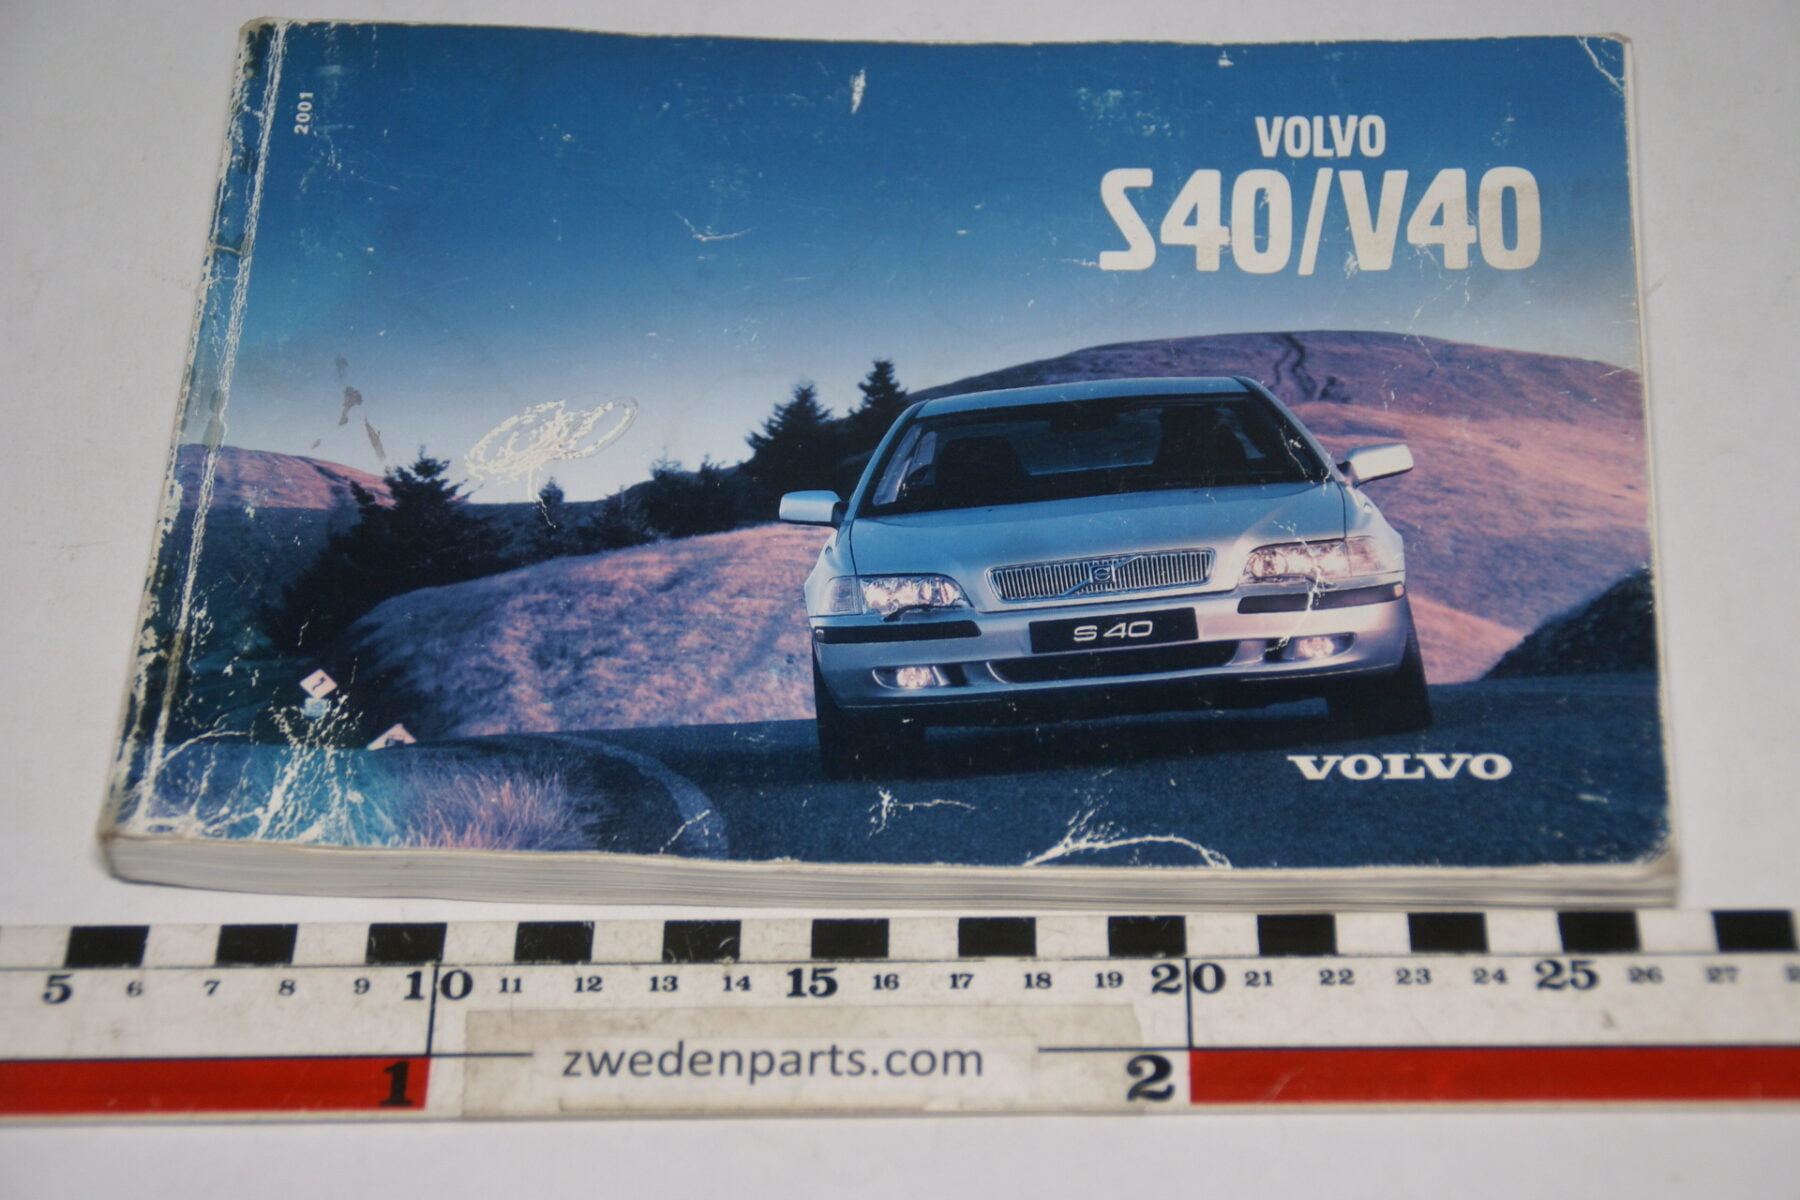 DSC07719 ca 2000 originele instructieboekje Volvo S40 V40 nr TP 4816 Svensk-39493407